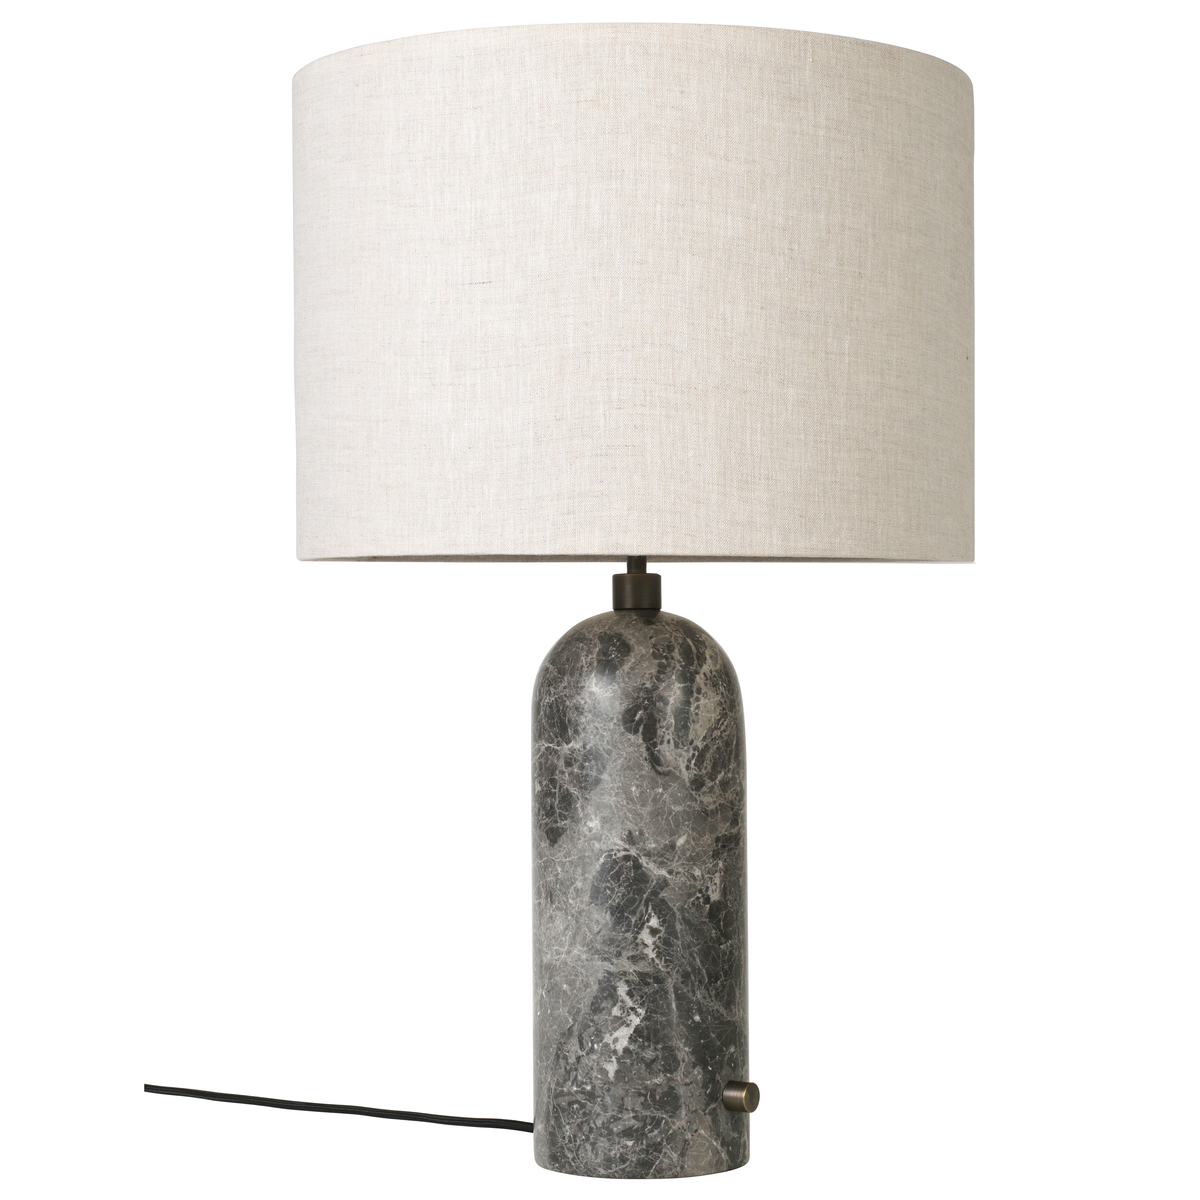 Gubi Gravity Table Lamp, Large, Grey Marble